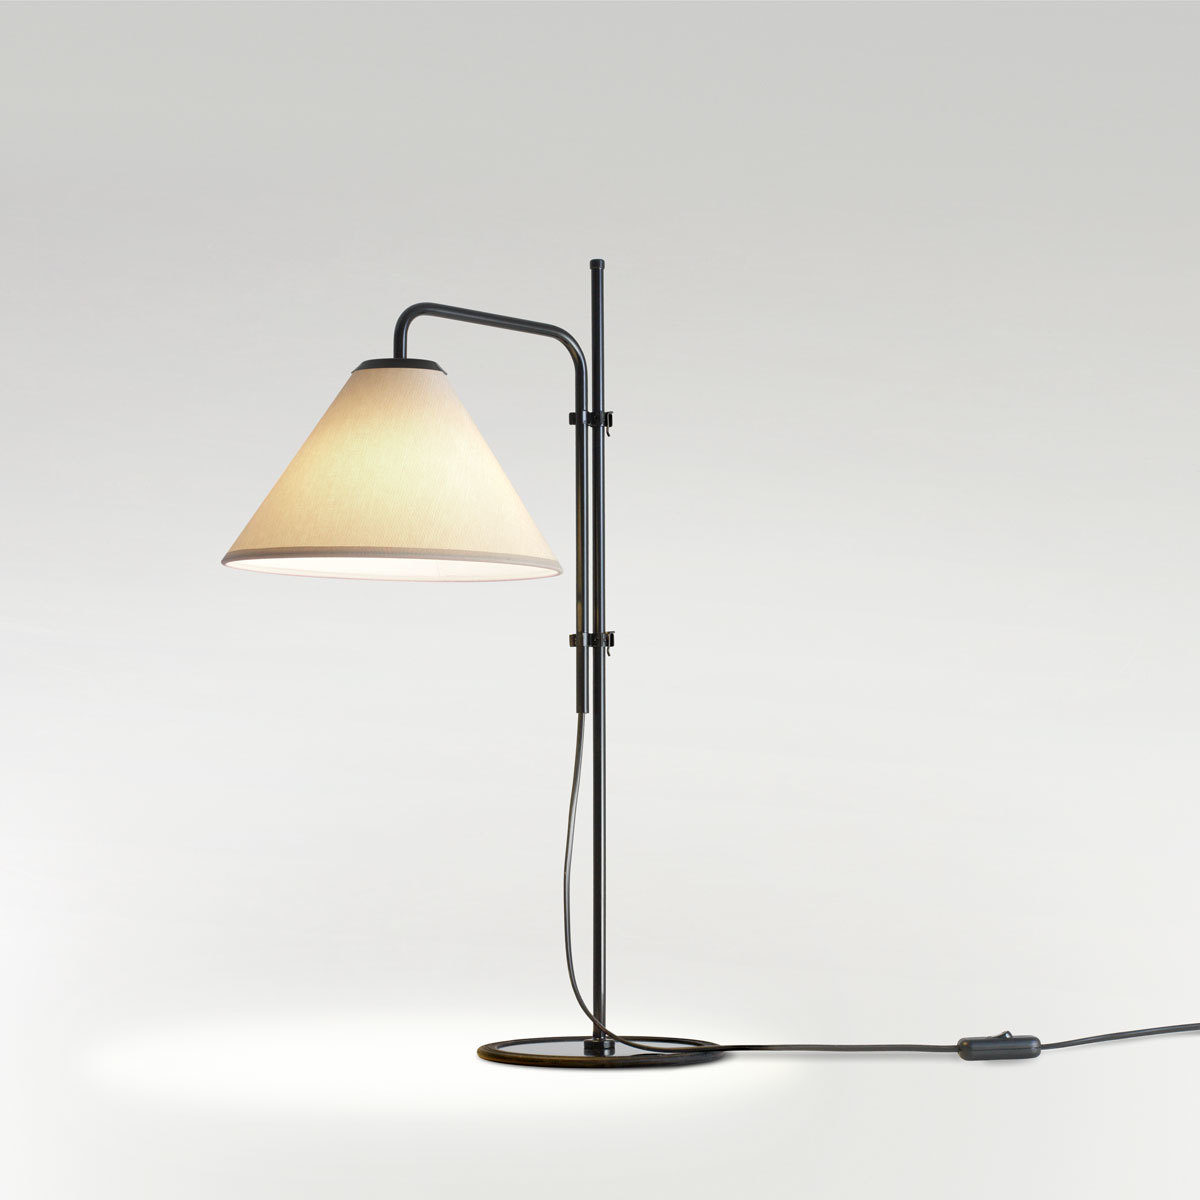 Funiculi 2018 Table Lamp